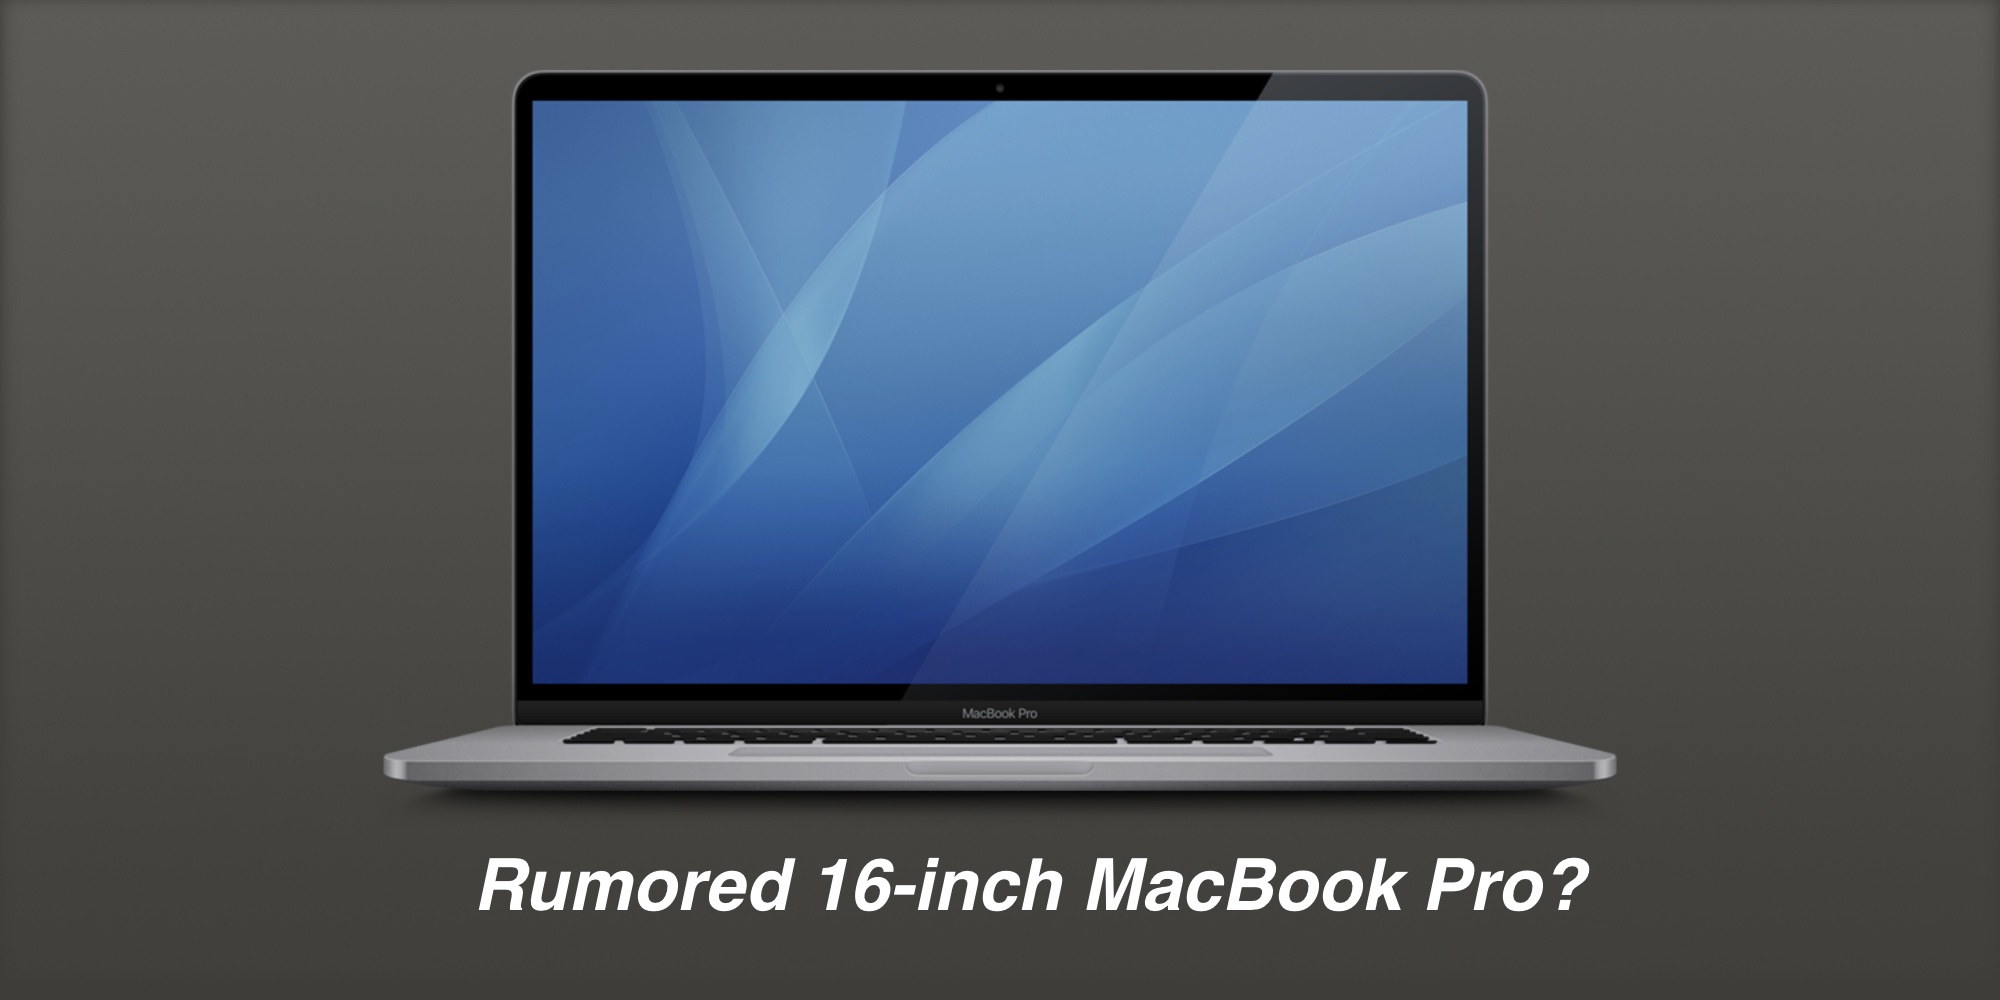 mac laptop icon